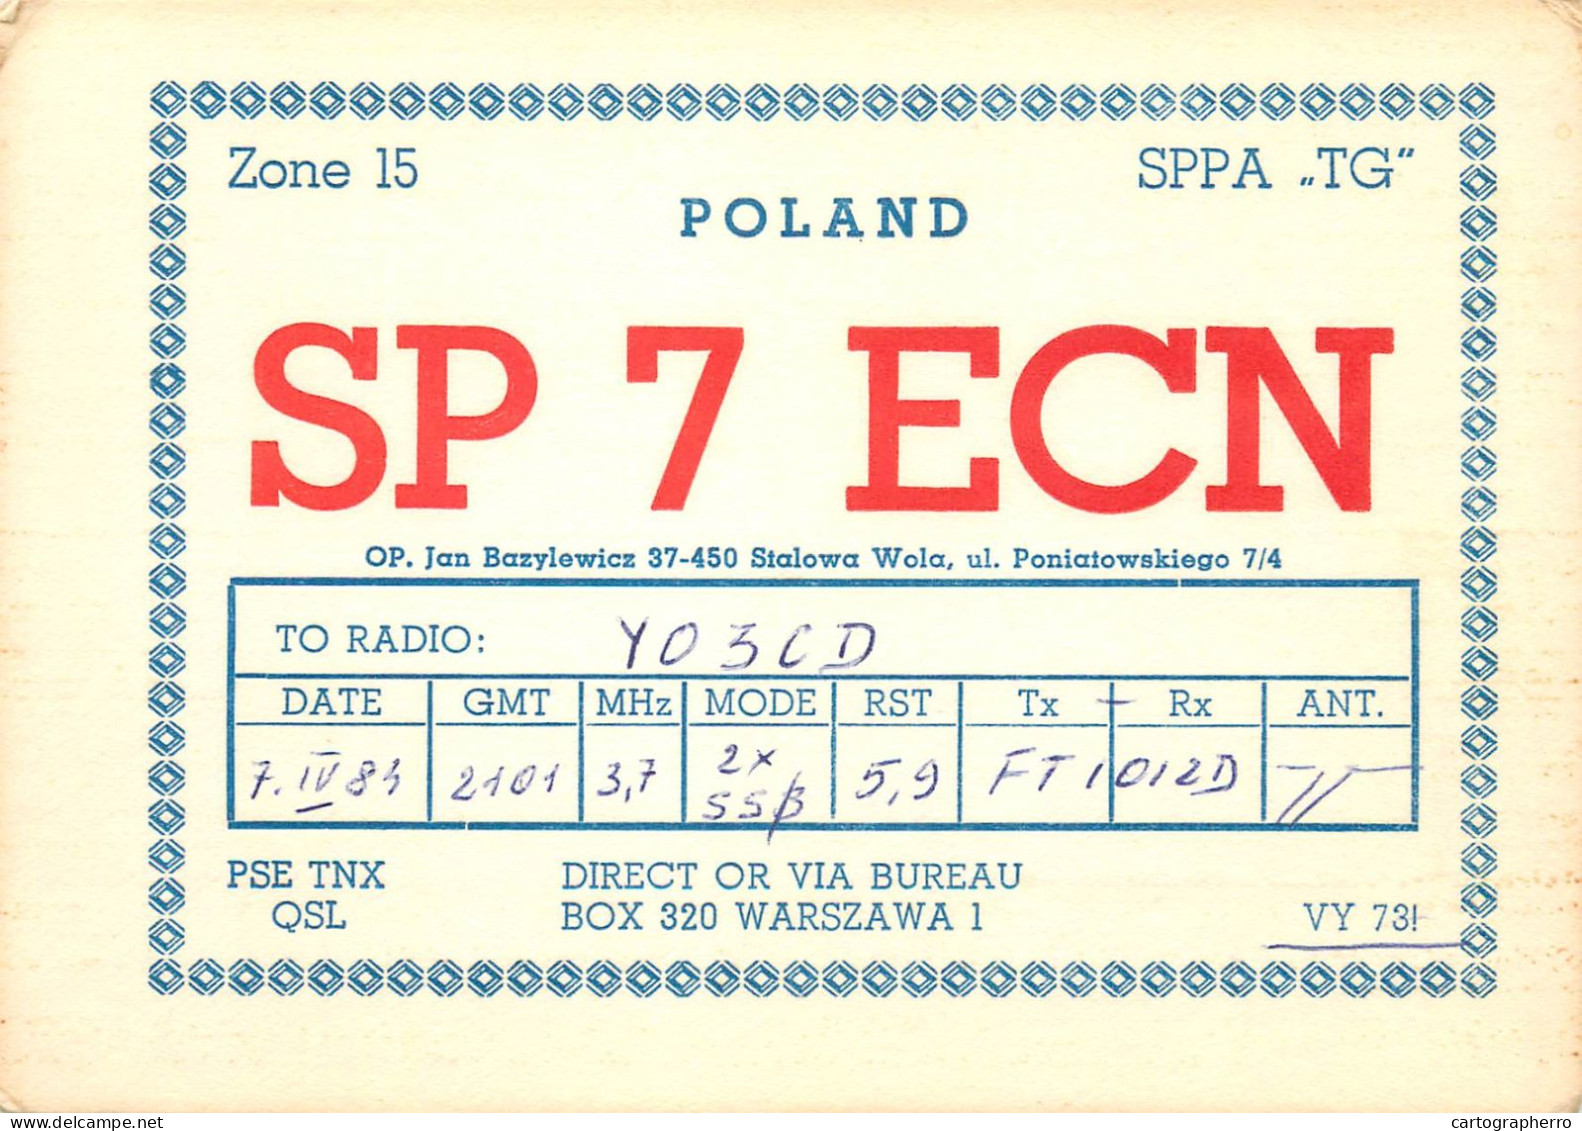 Polish Amateur Radio Station QSL Card Poland Y03CD SP7ECN - Radio Amateur